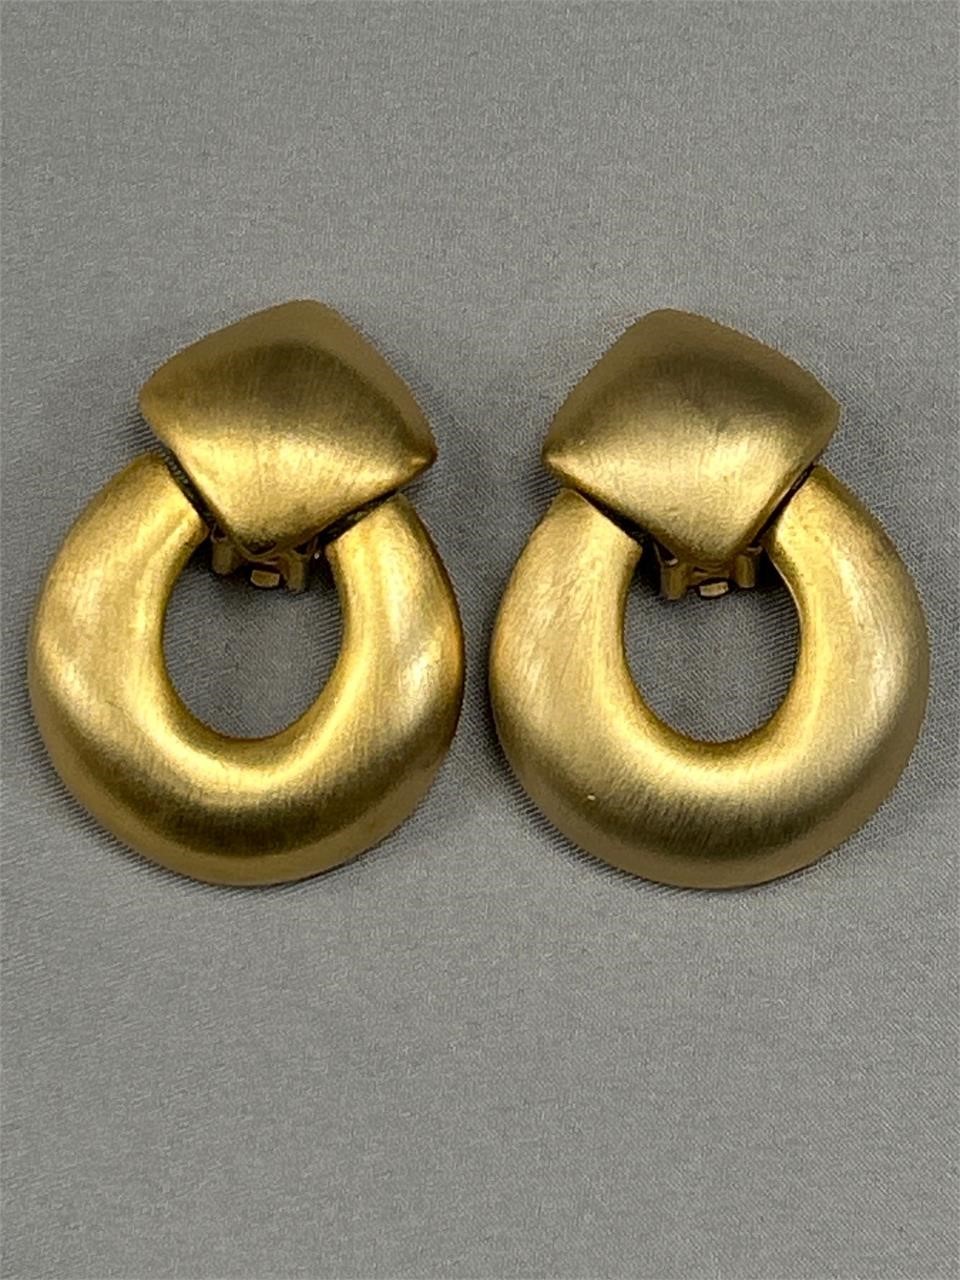 Vintage Goldtone earrings